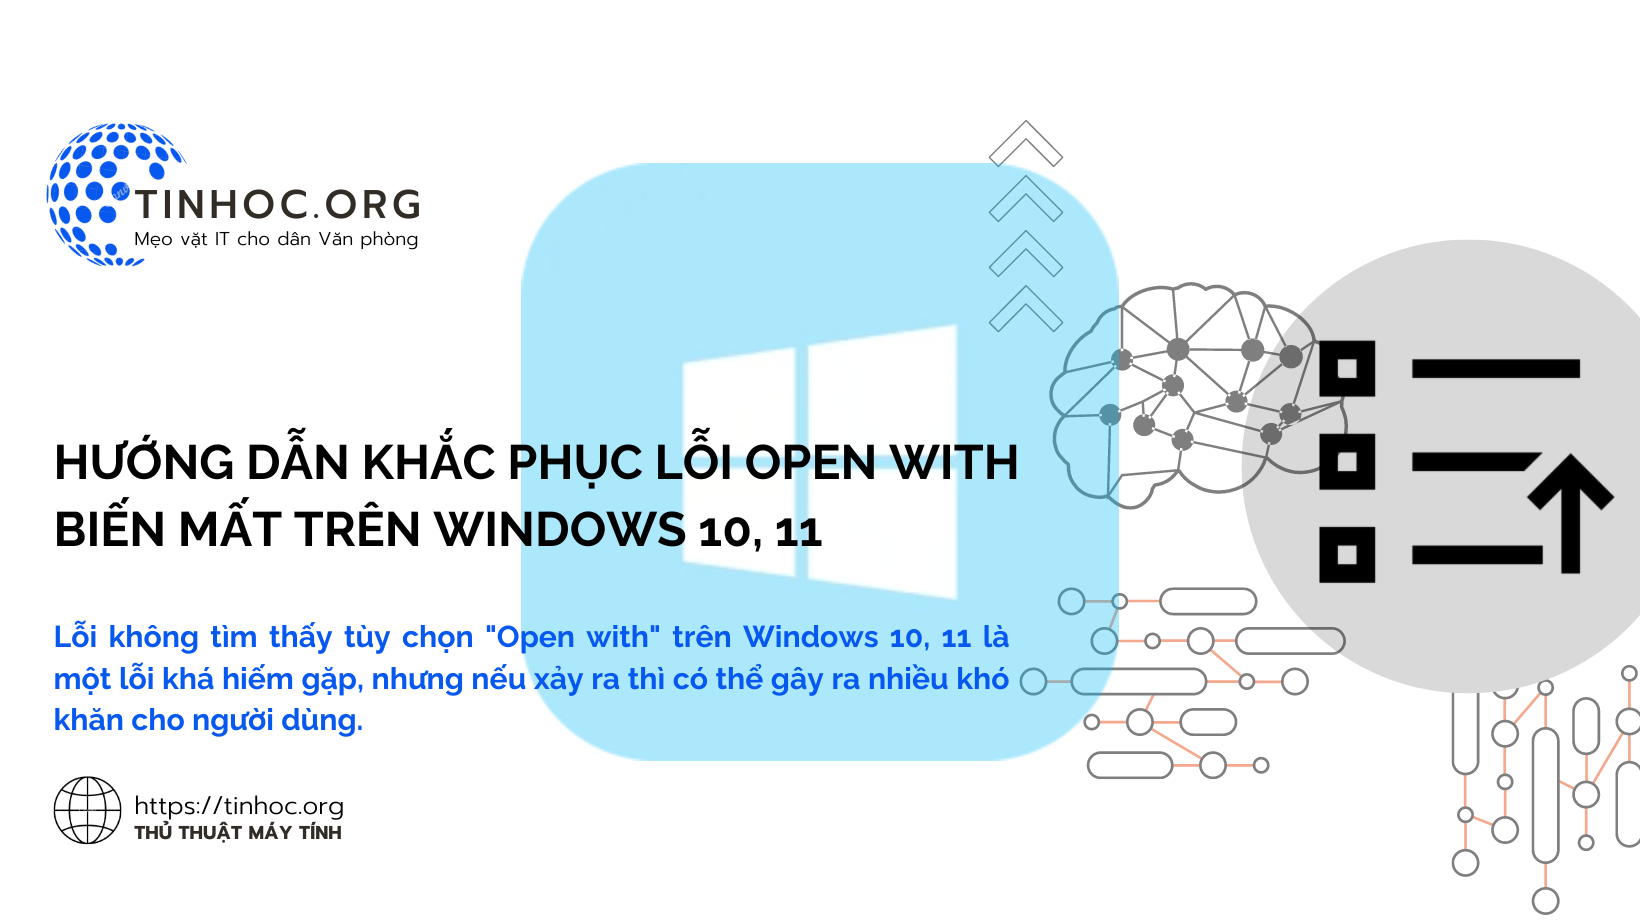 Lỗi không tìm thấy tùy chọn "Open with" trên Windows 10, 11 là một lỗi khá hiếm gặp, nhưng nếu xảy ra thì có thể gây ra nhiều khó khăn cho người dùng.